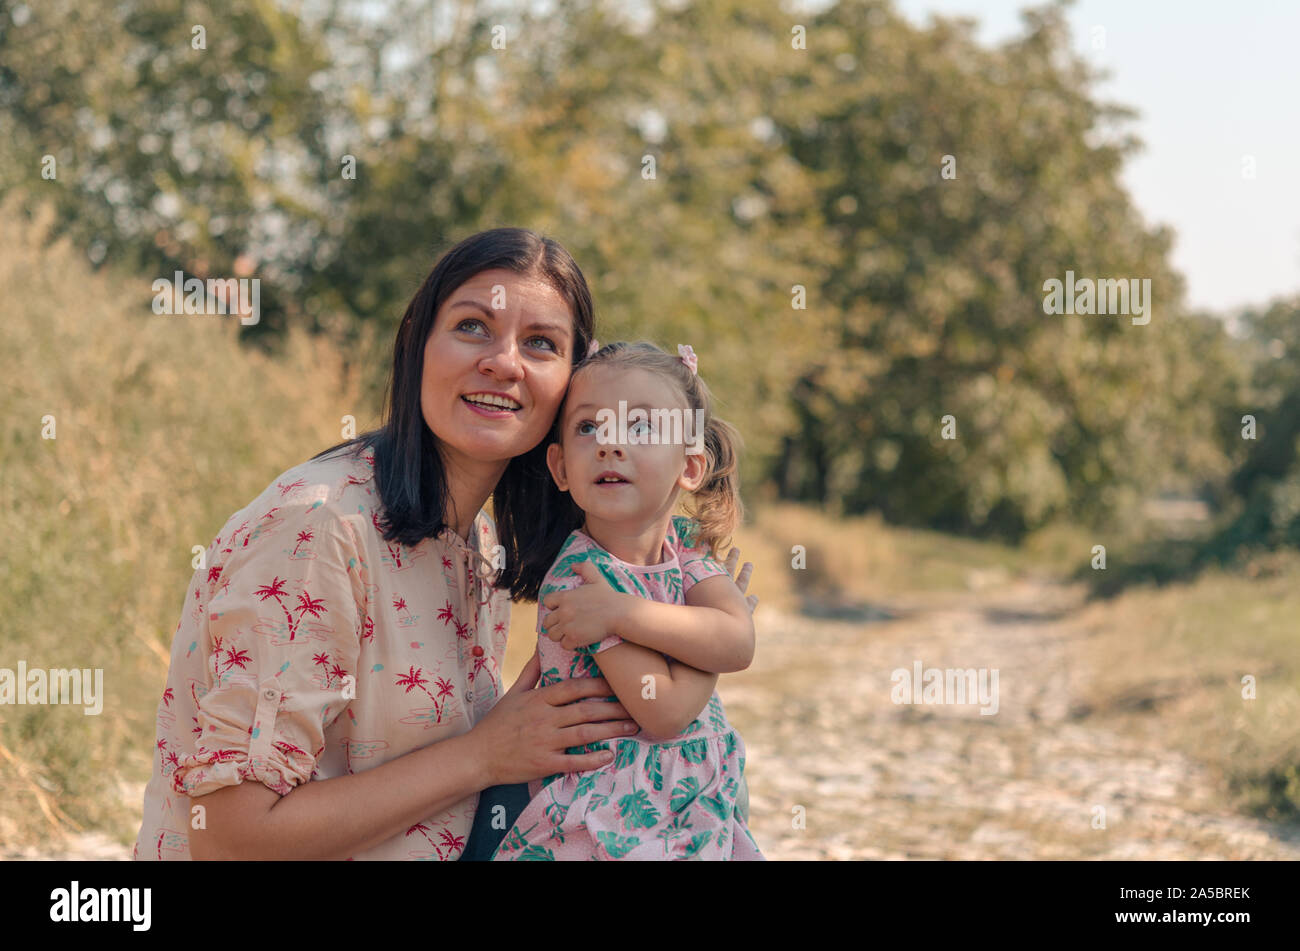 Adorabili ragazze ridono per esterni. Foto di allegro caucasici madre e figlia con uno splendido sorriso. Donna e bambina di guardare in alto. Foto Stock